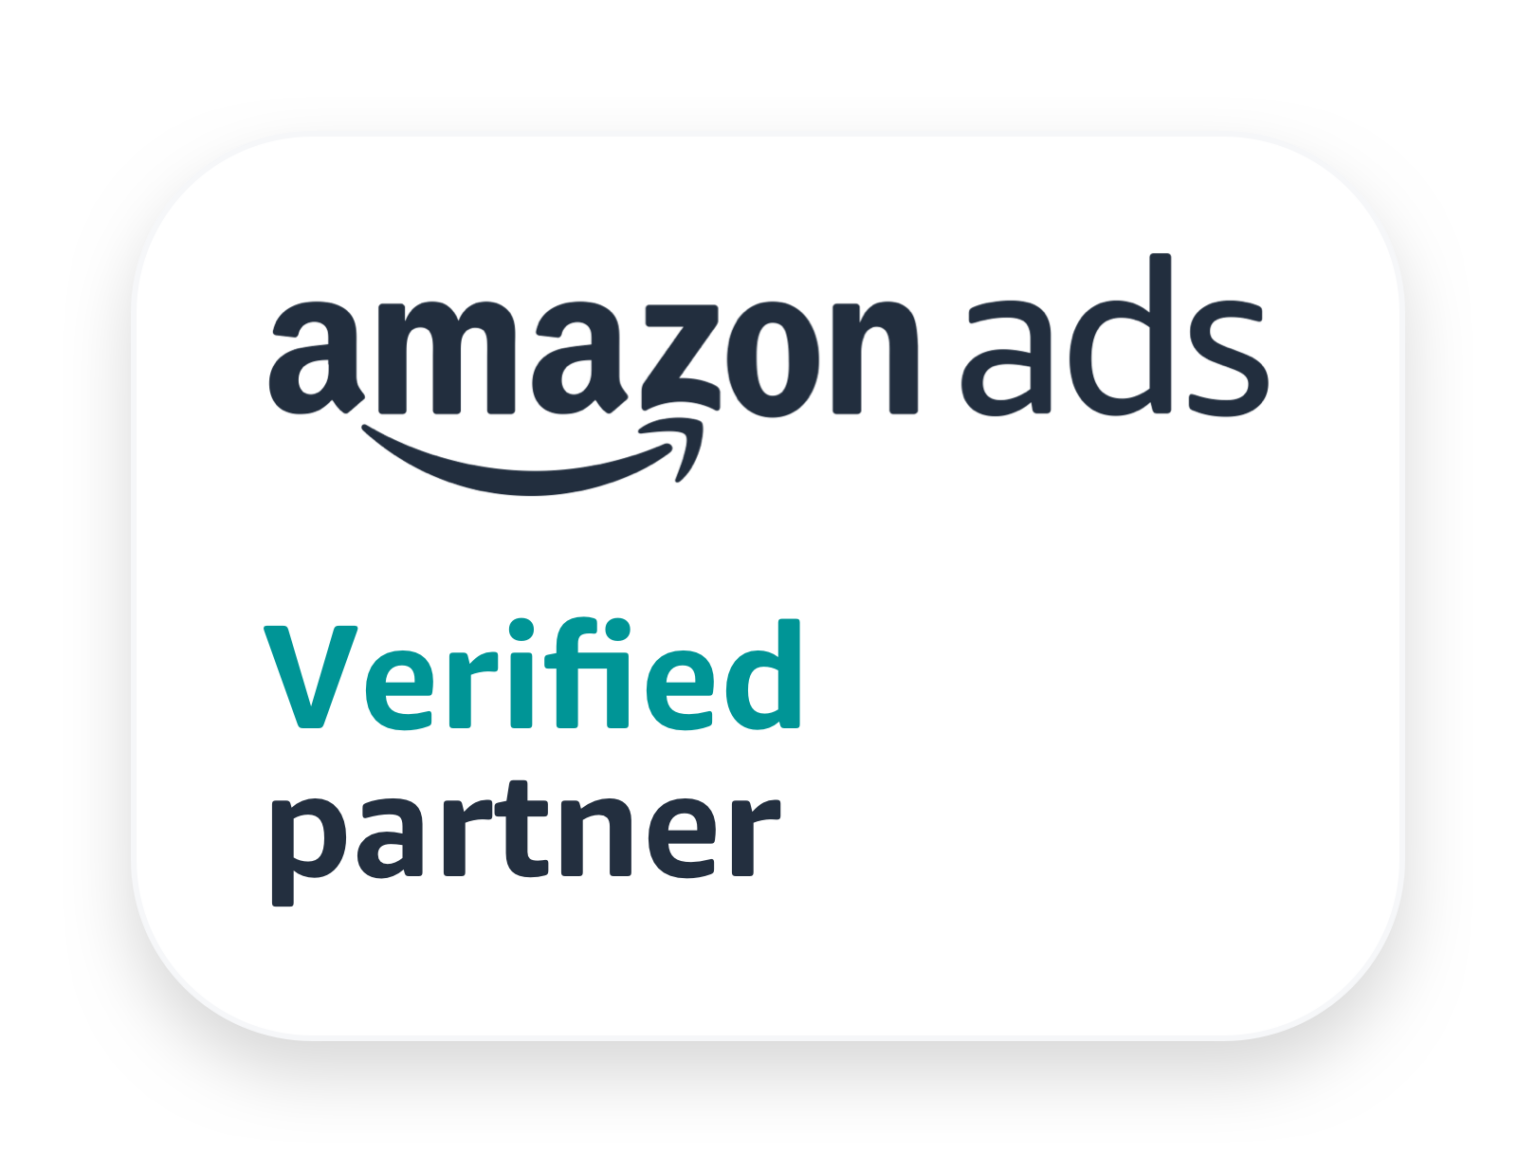 Amazon ads Verified Partner